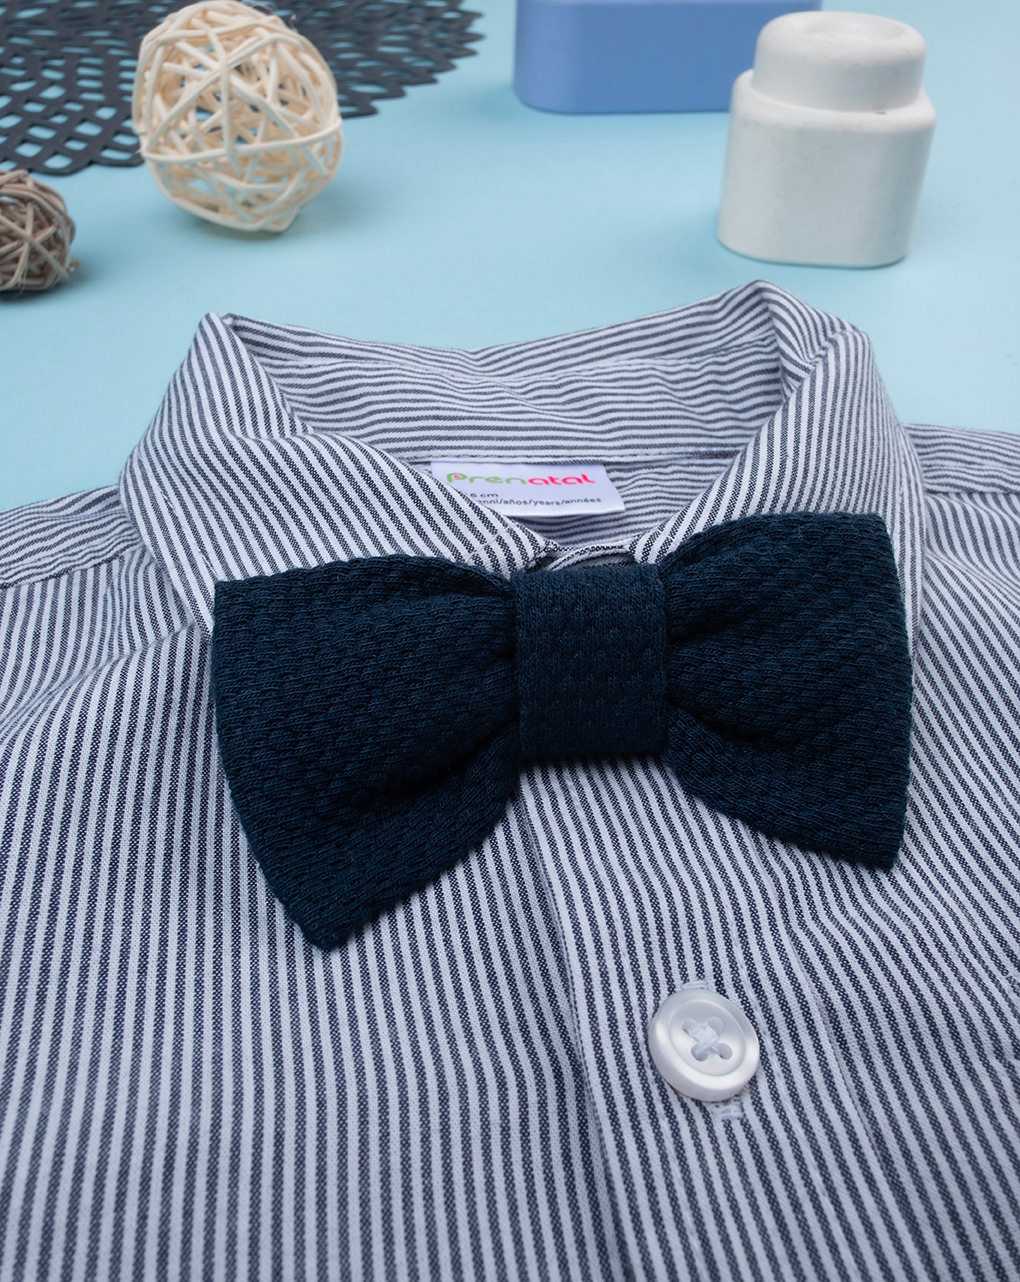 παιδικό πουκάμισο ριγέ μπλε/λευκό για αγόρι - Prénatal